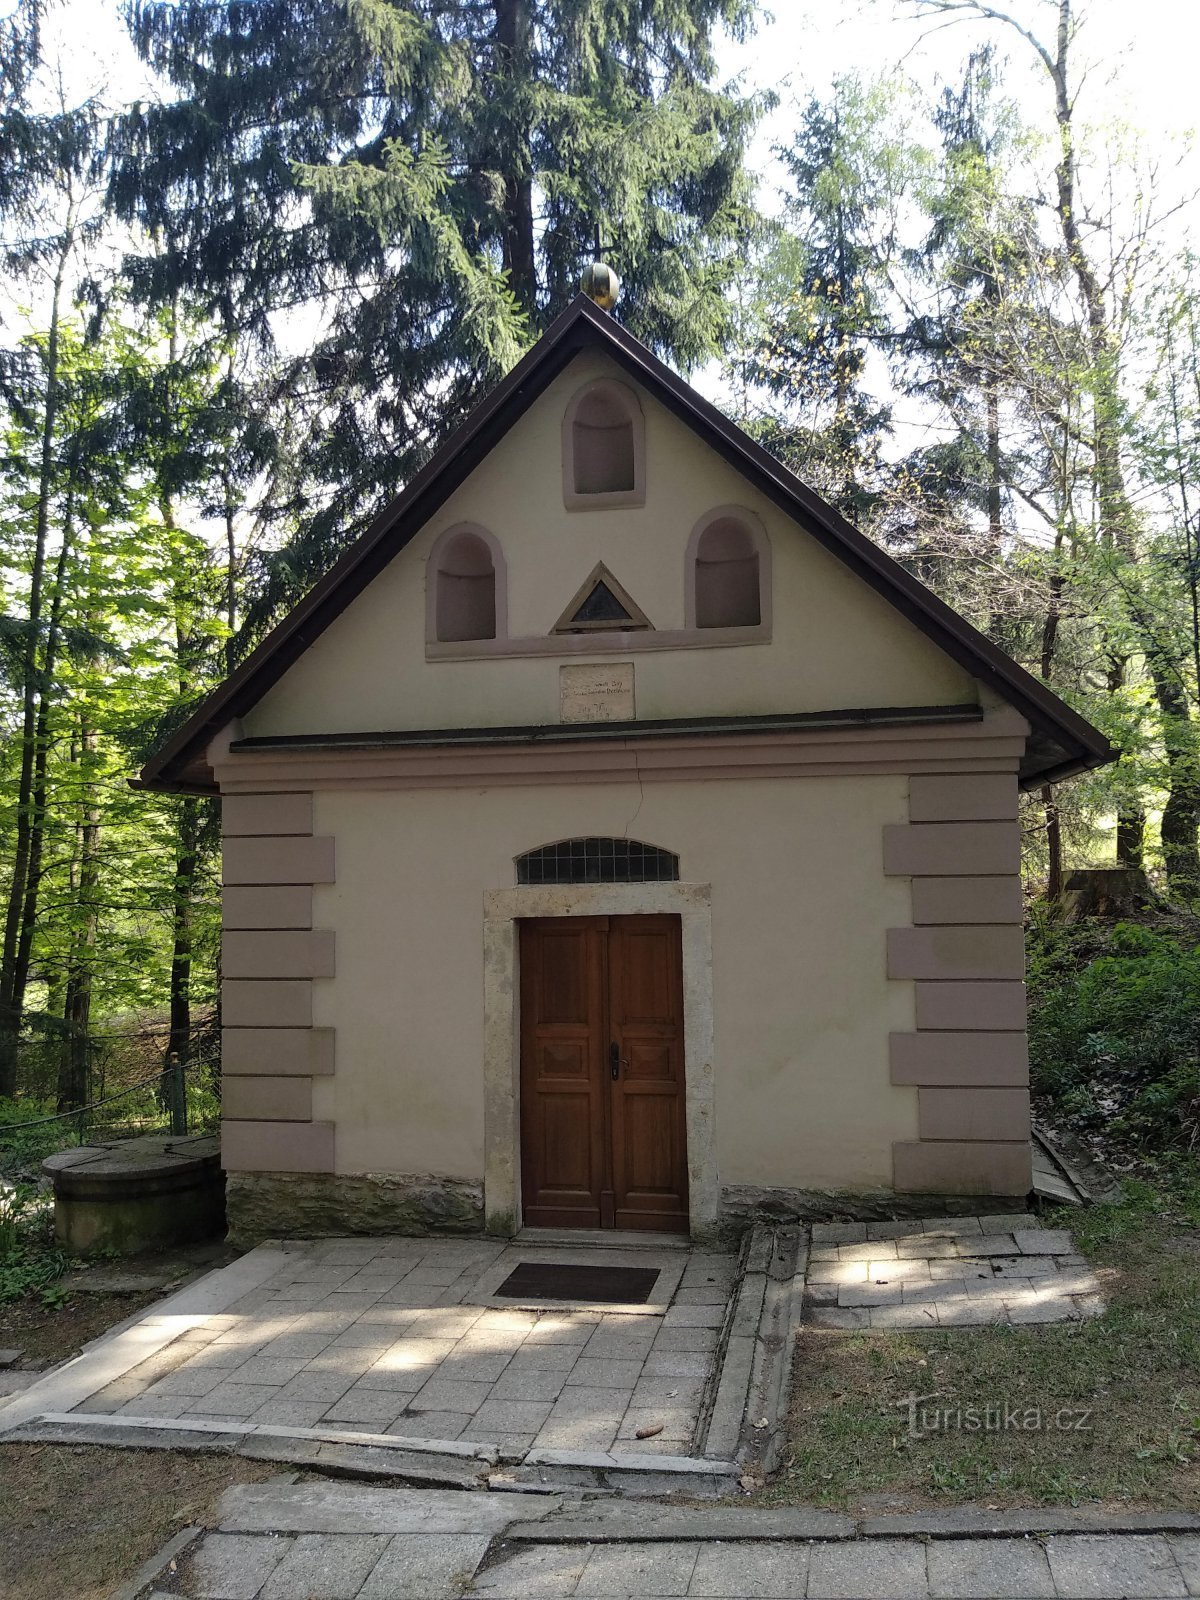 Chapel of Our Lady of Rokolska